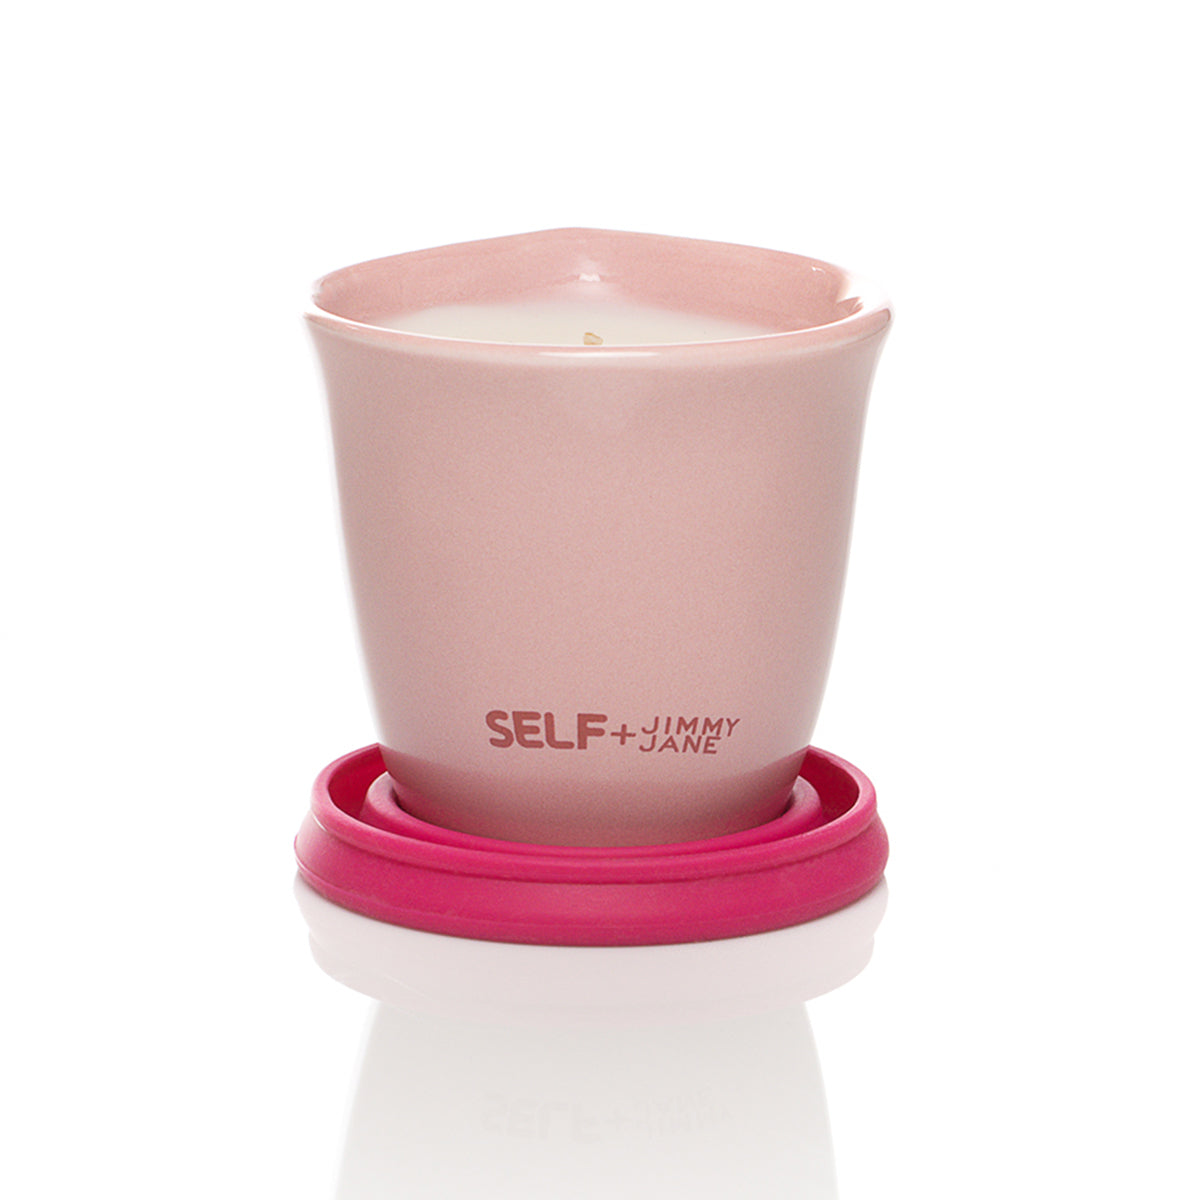 SELF + Jimmyjane Massage Candle - Bergamot Rose